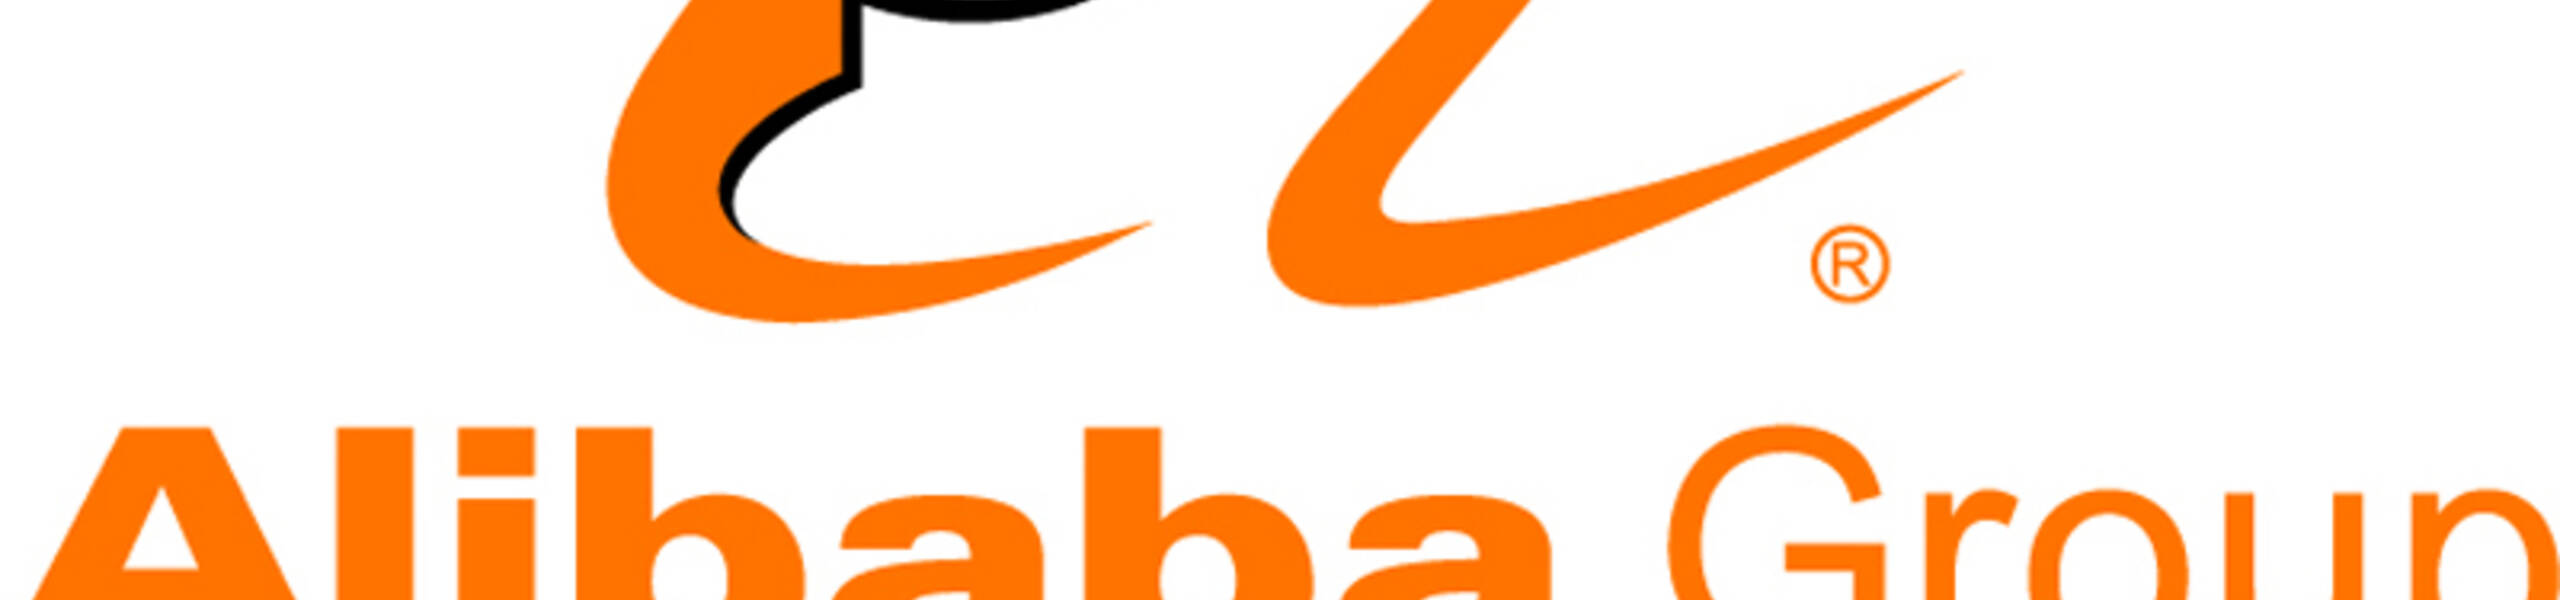 Good news for Alibaba